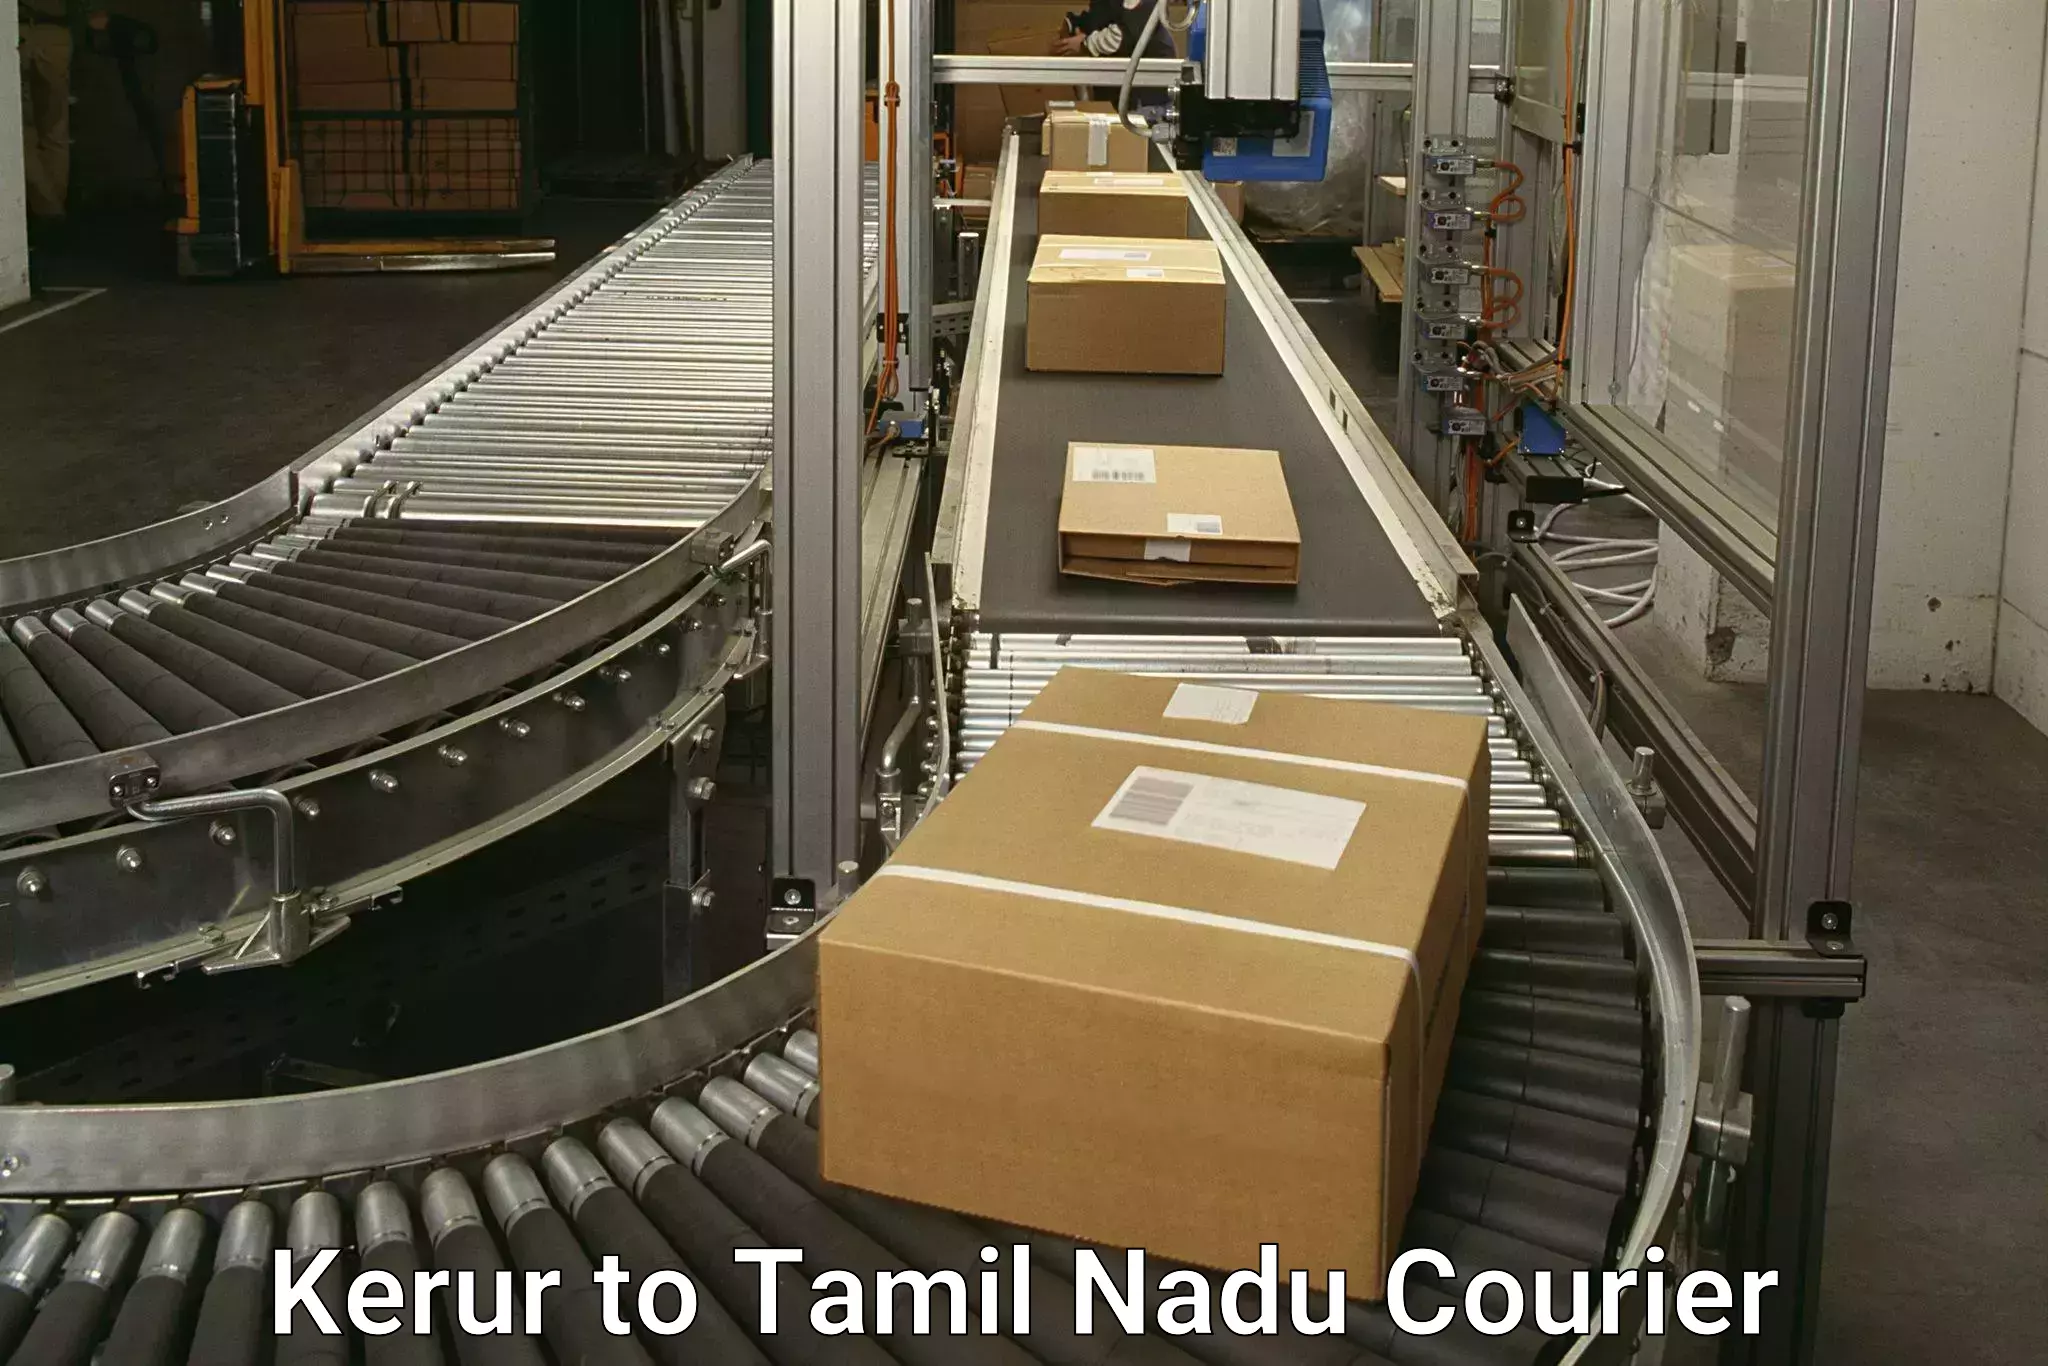 High-speed parcel service in Kerur to Tiruturaipundi